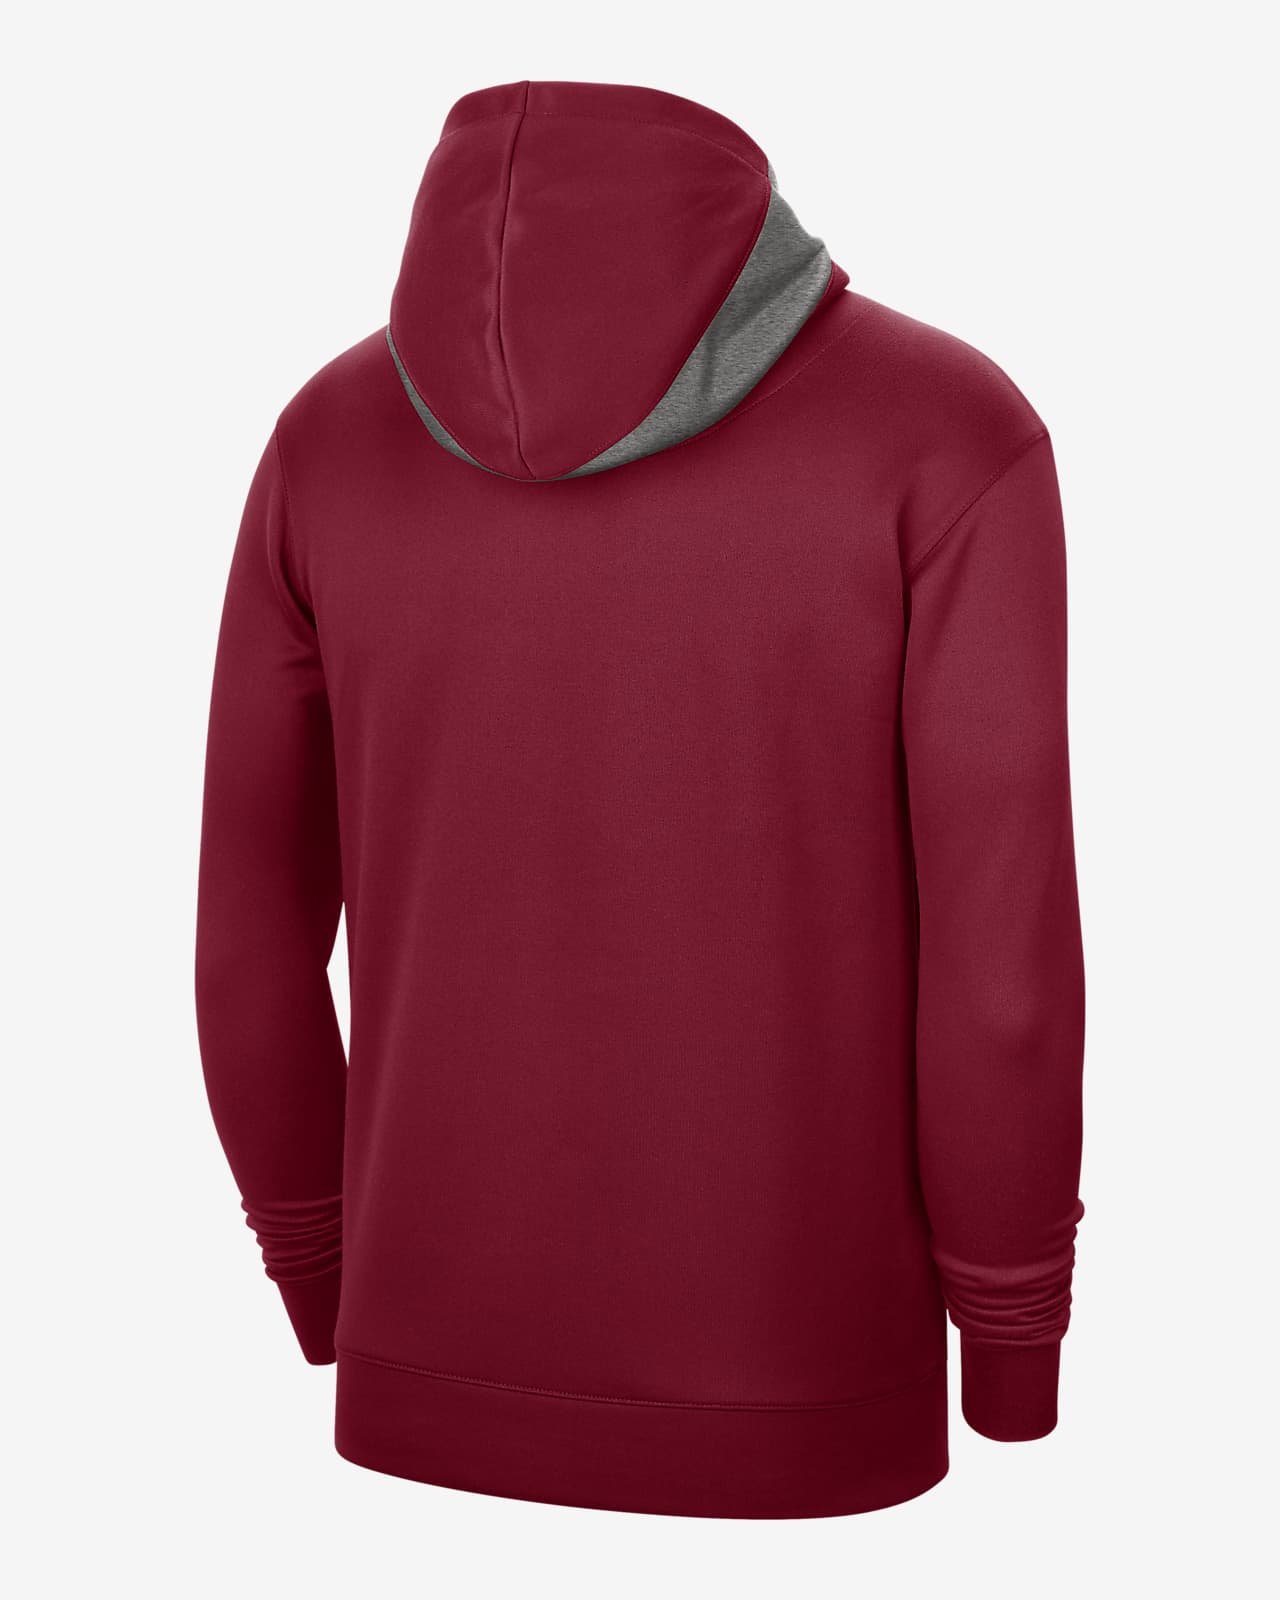 Nike Spotlight Short Sleeve Hoodie in Red for Men